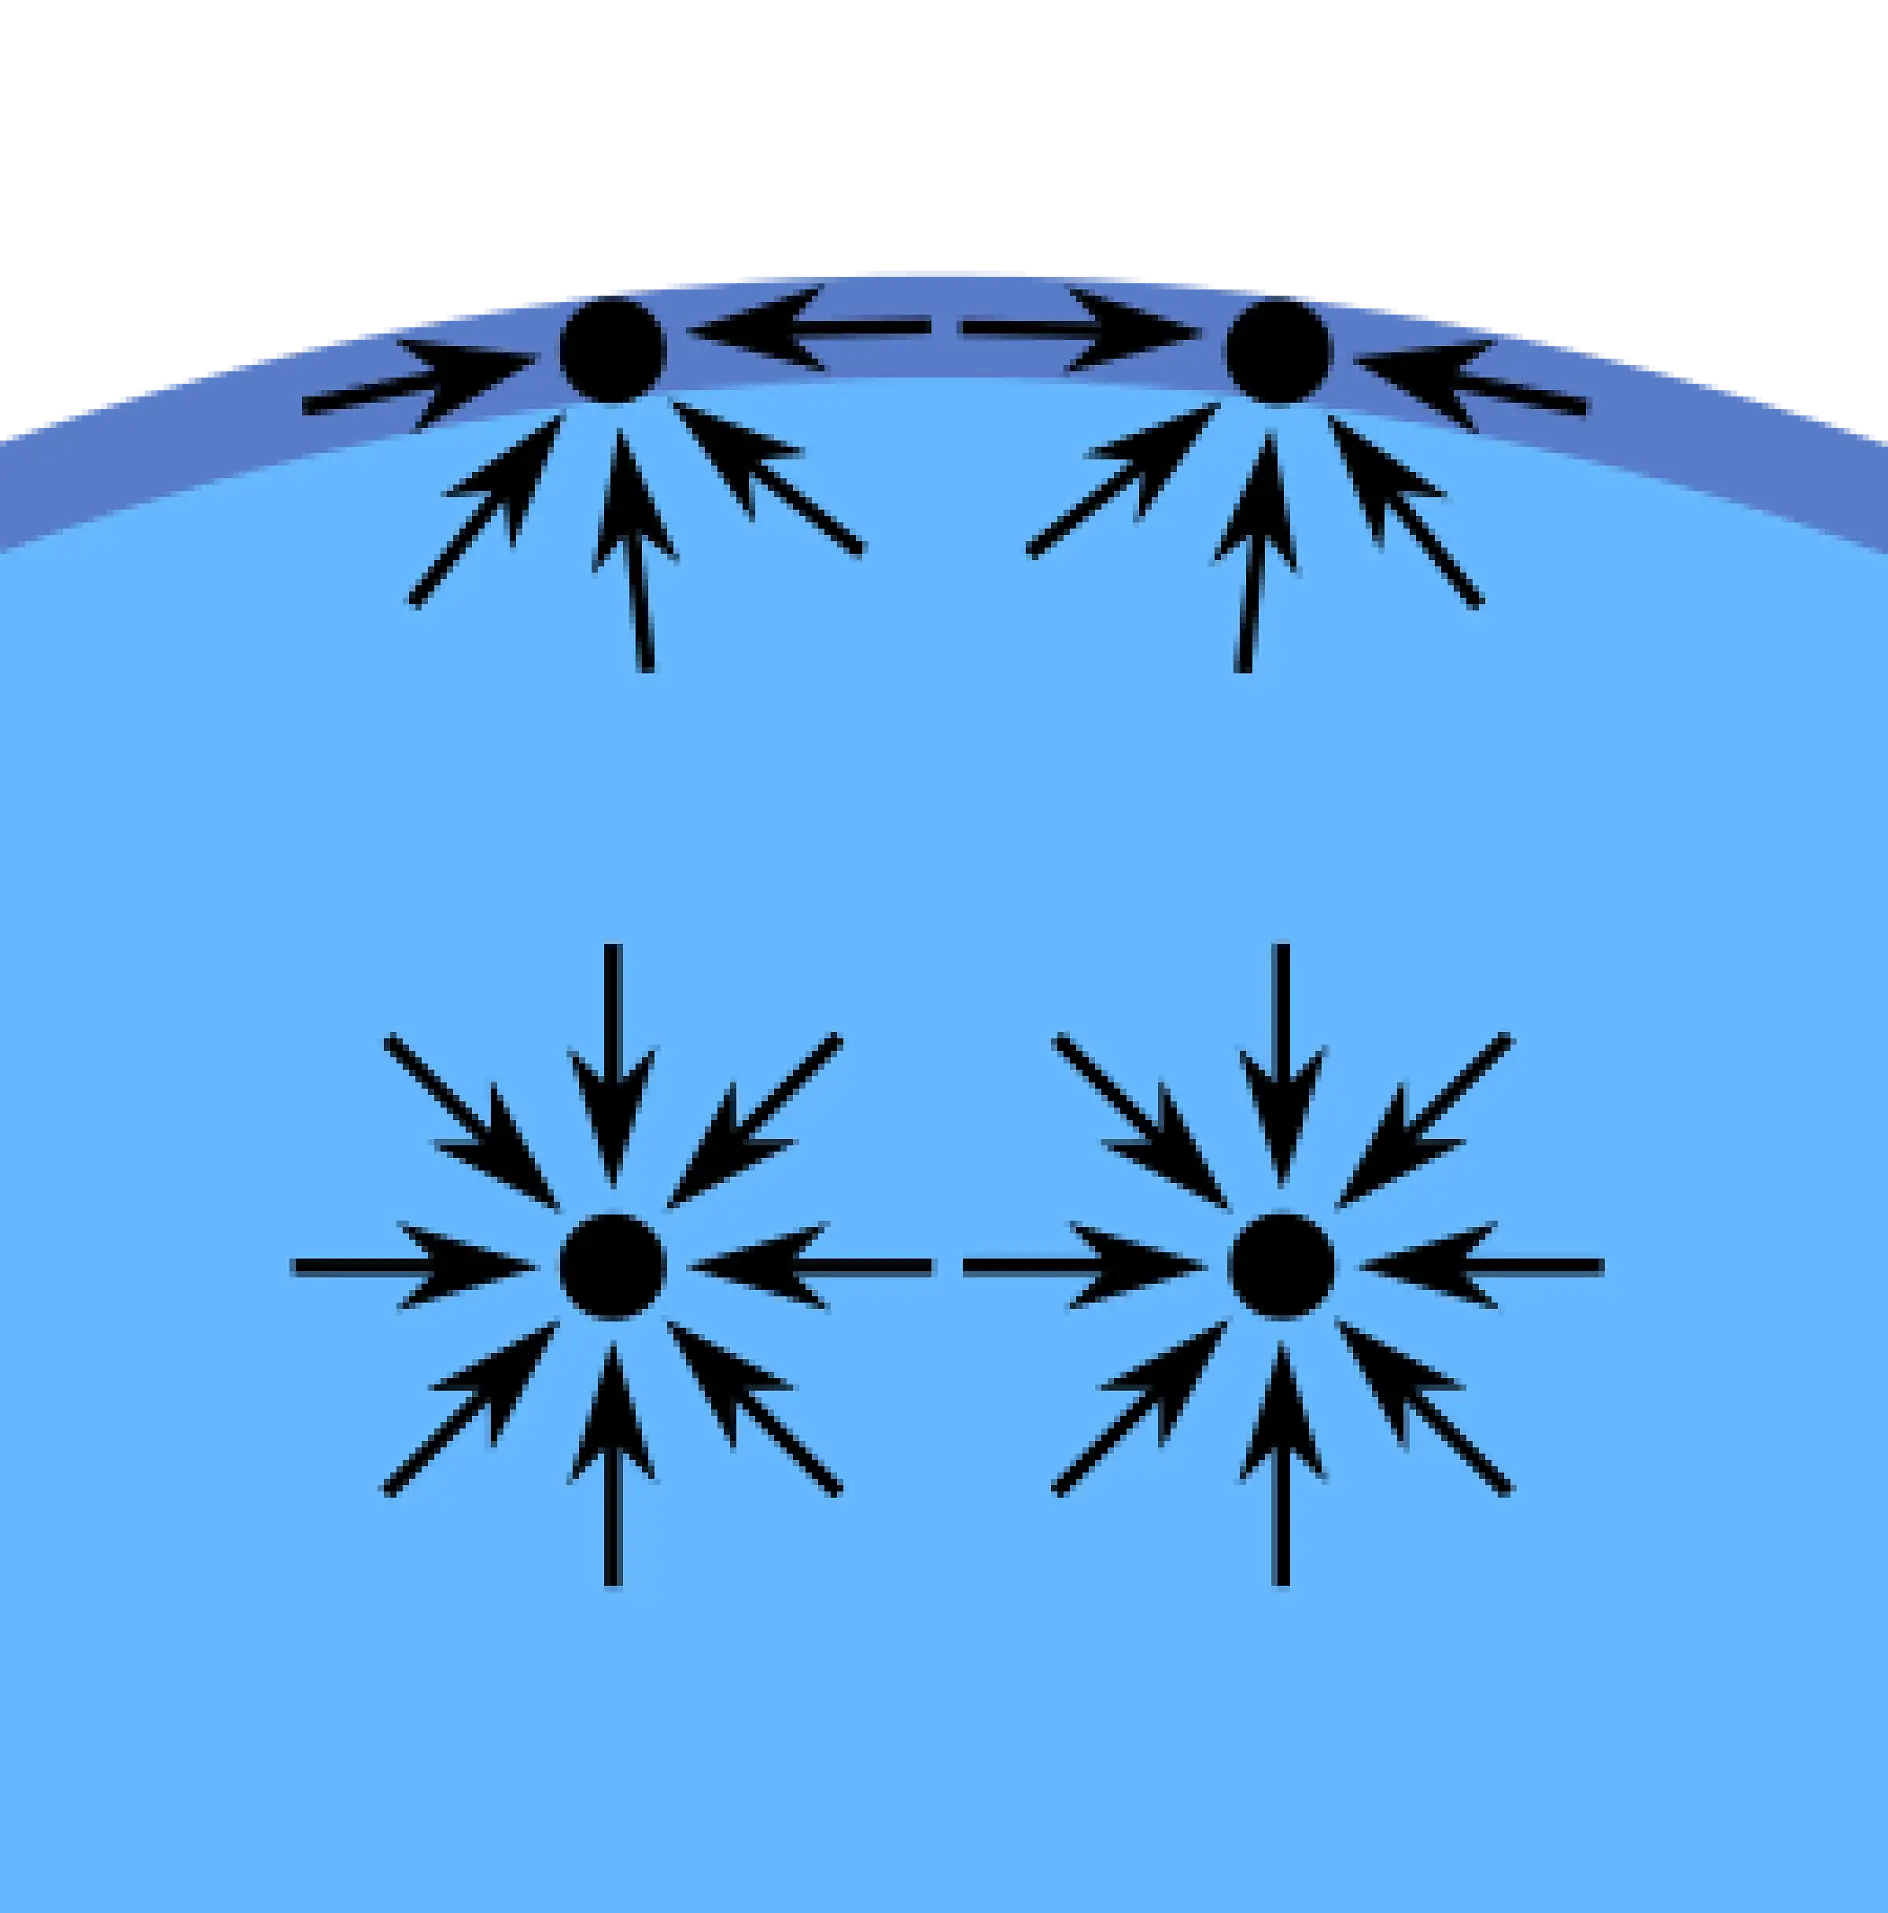 Οι δυνάμεις συνοχής - δηλαδή οι ελκτικές δυνάμεις που αναπτύσσονται στο εσωτερικό μιας ουσίας - μεταξύ υγρών μορίων δημιουργούν το φαινόμενο που ονομάζεται «επιφανειακή τάση». Τα μόρια στην επιφάνεια ενός ποτηριού με νερό, για παράδειγμα, δεν έχουν άλλα μόρια νερού σε όλες τους τις πλευρές. Έτσι, προσελκύονται από το εσωτερικό του νερού και δημιουργούν μεγαλύτερες δυνάμεις συνοχής με τα μόρια νερού που βρίσκονται δίπλα τους και από κάτω τους. Αυτή η έλξη είναι μεγαλύτερη από αυτή που αναπτύσσεται με τα μόρια του νερού από πάνω τους. Τελικά, αυτή η εσωτερική δύναμη δημιουργεί την επιφάνεια που χωρίζει το νερό από τον αέρα.